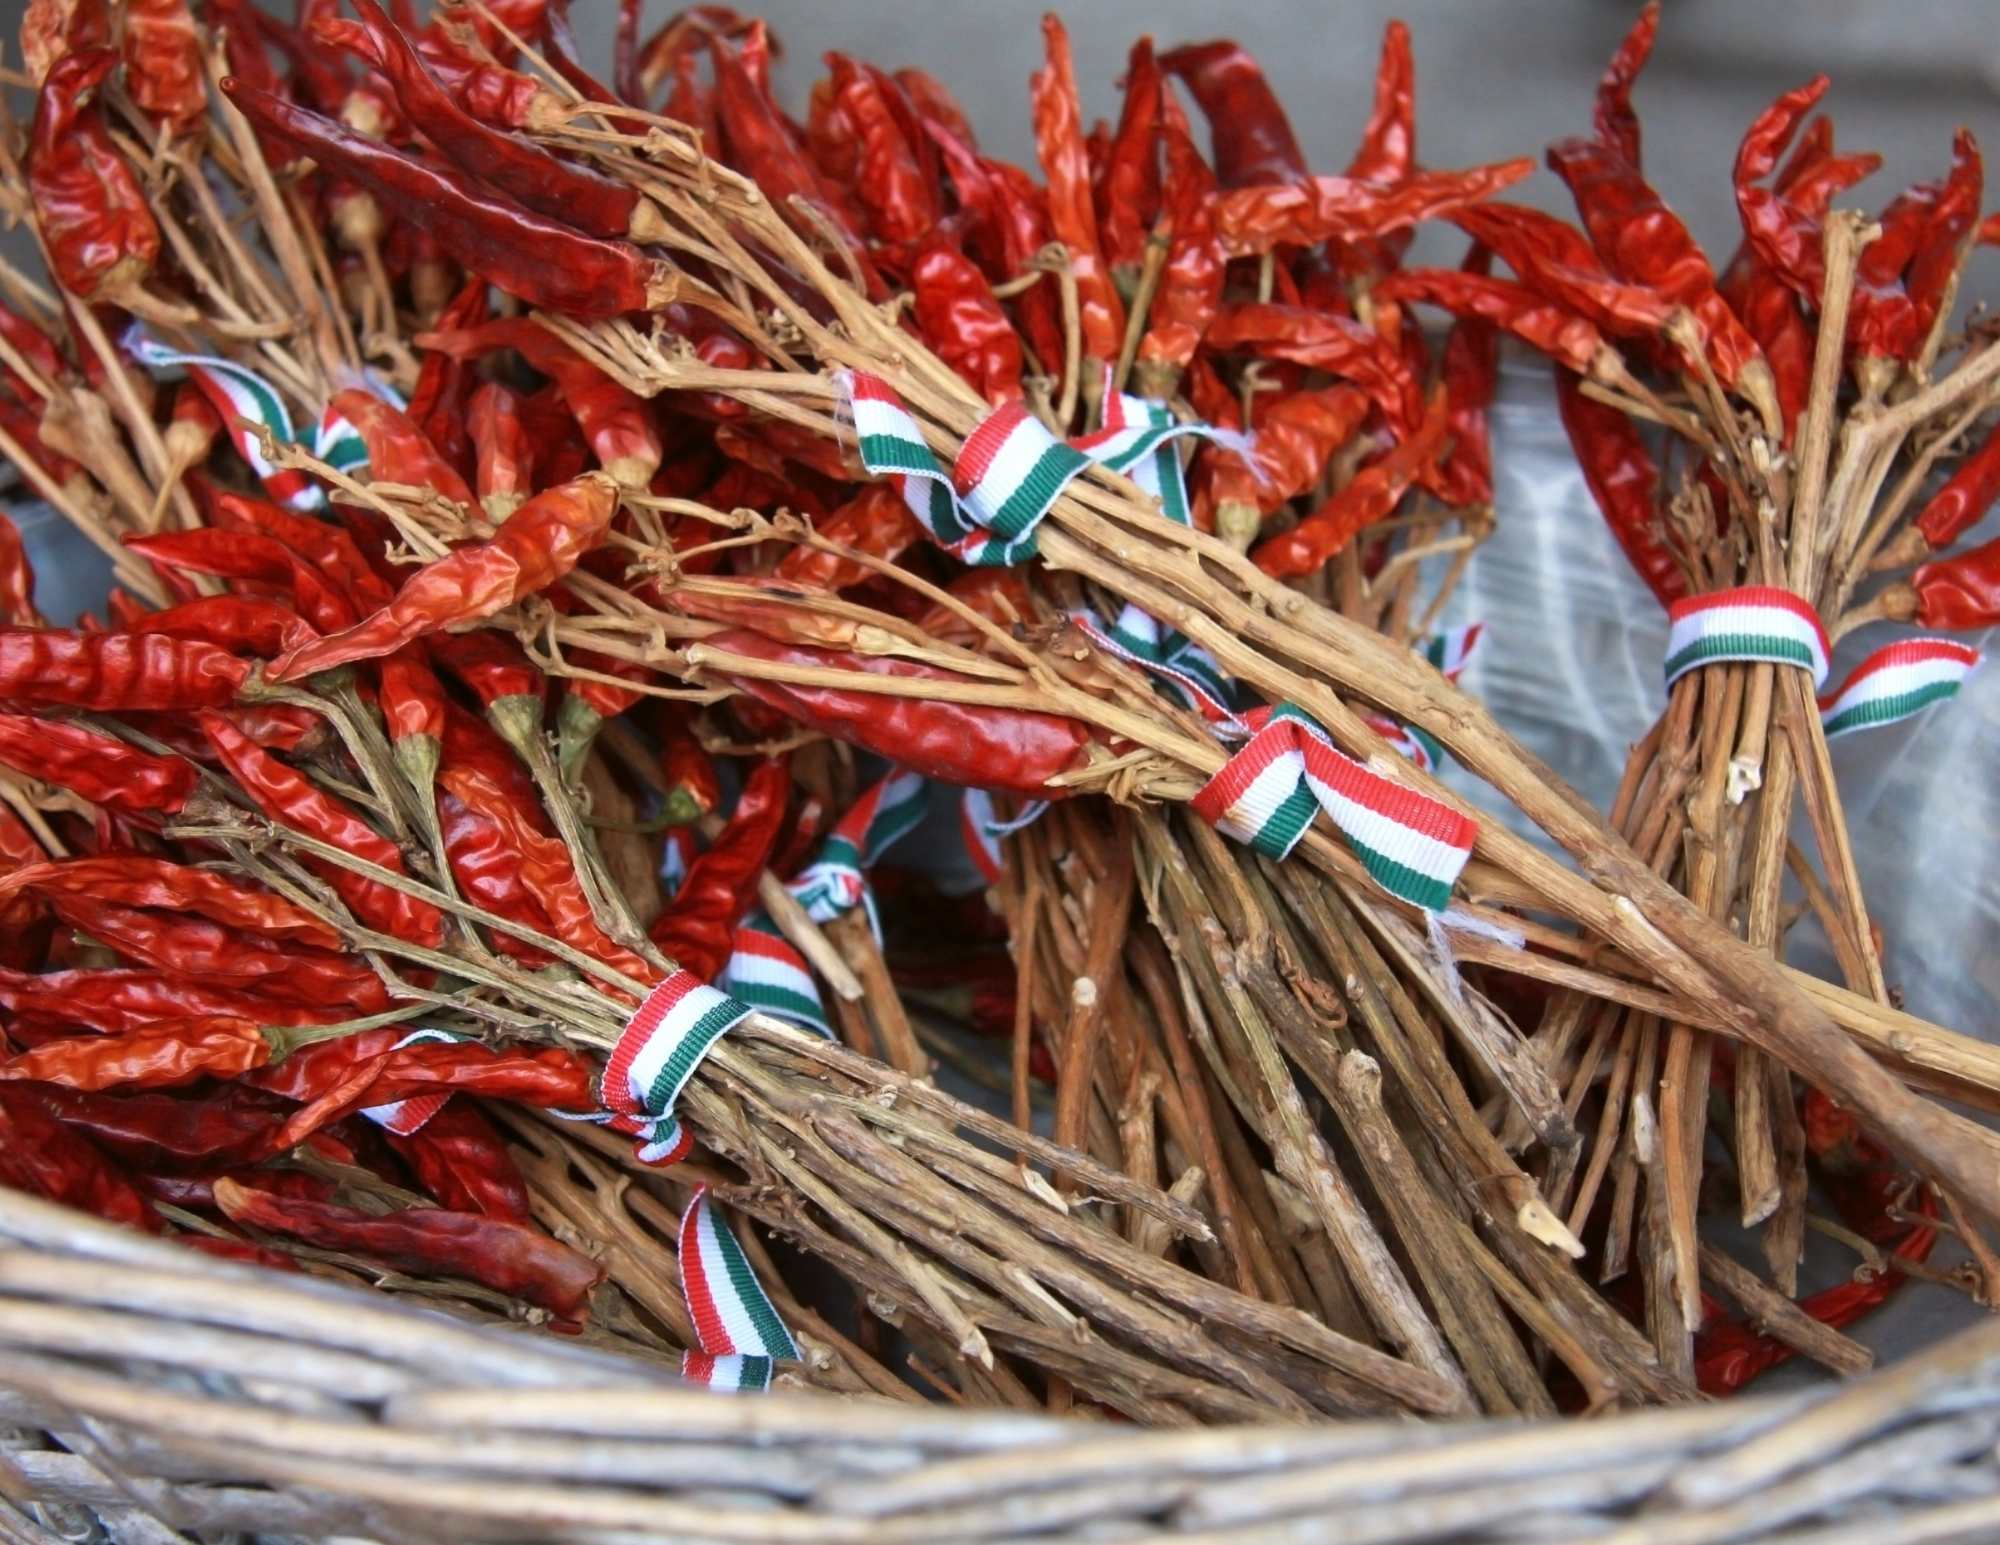 हंगेरियन व्यंजनों में सबसे लोकप्रिय जड़ी-बूटियाँ और मसाले